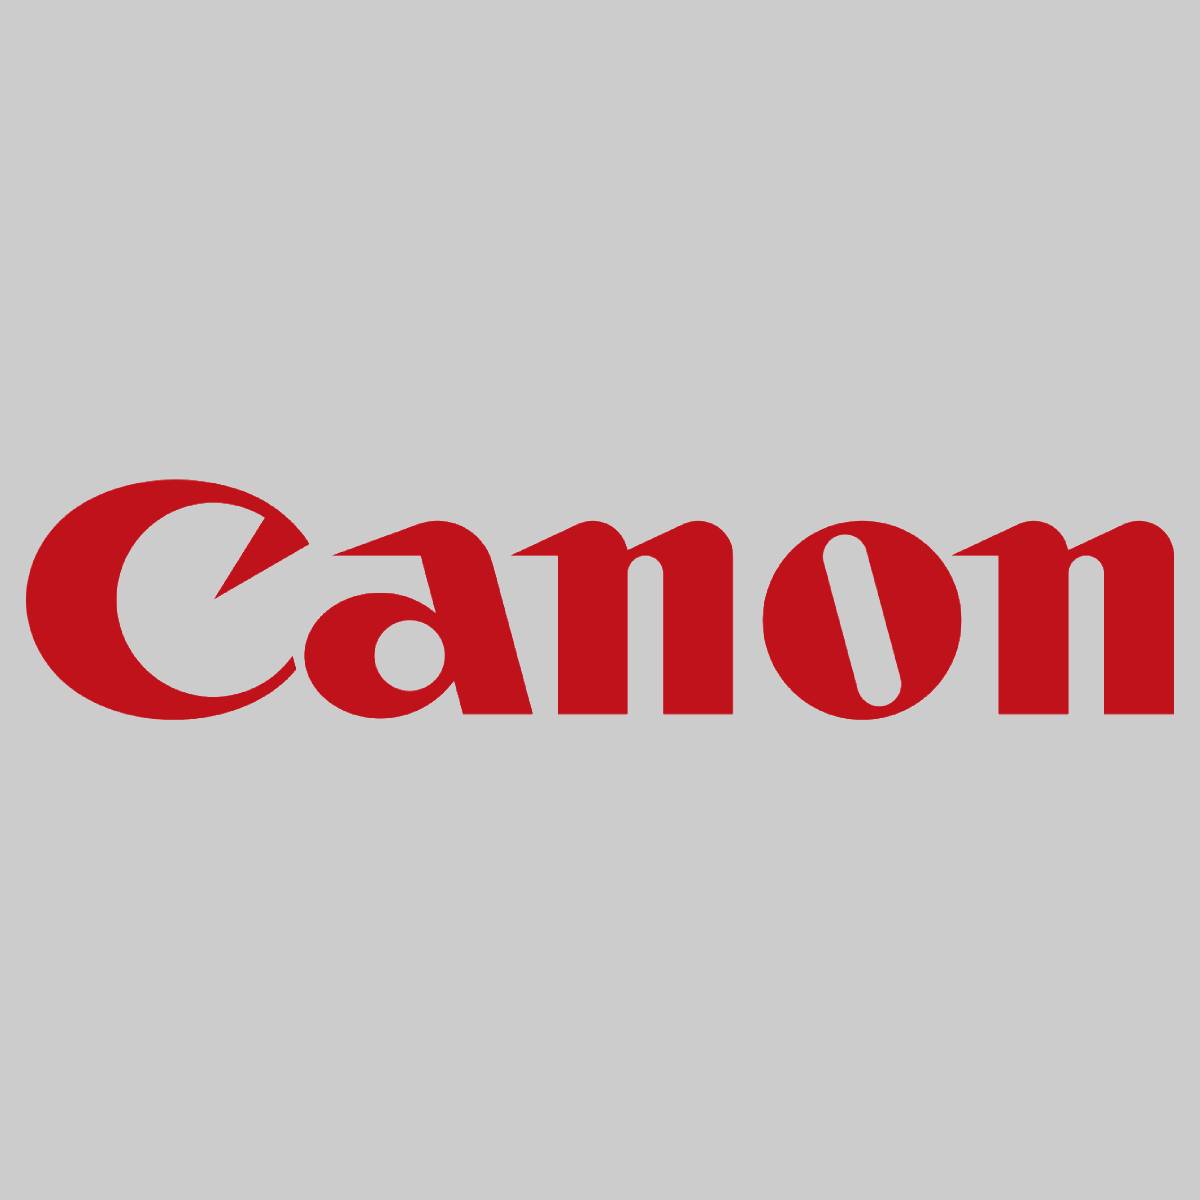 "Original Canon FUSER OIL 1000ML FG5-3918-00L für CLC 700 800 900 950 1000 1130